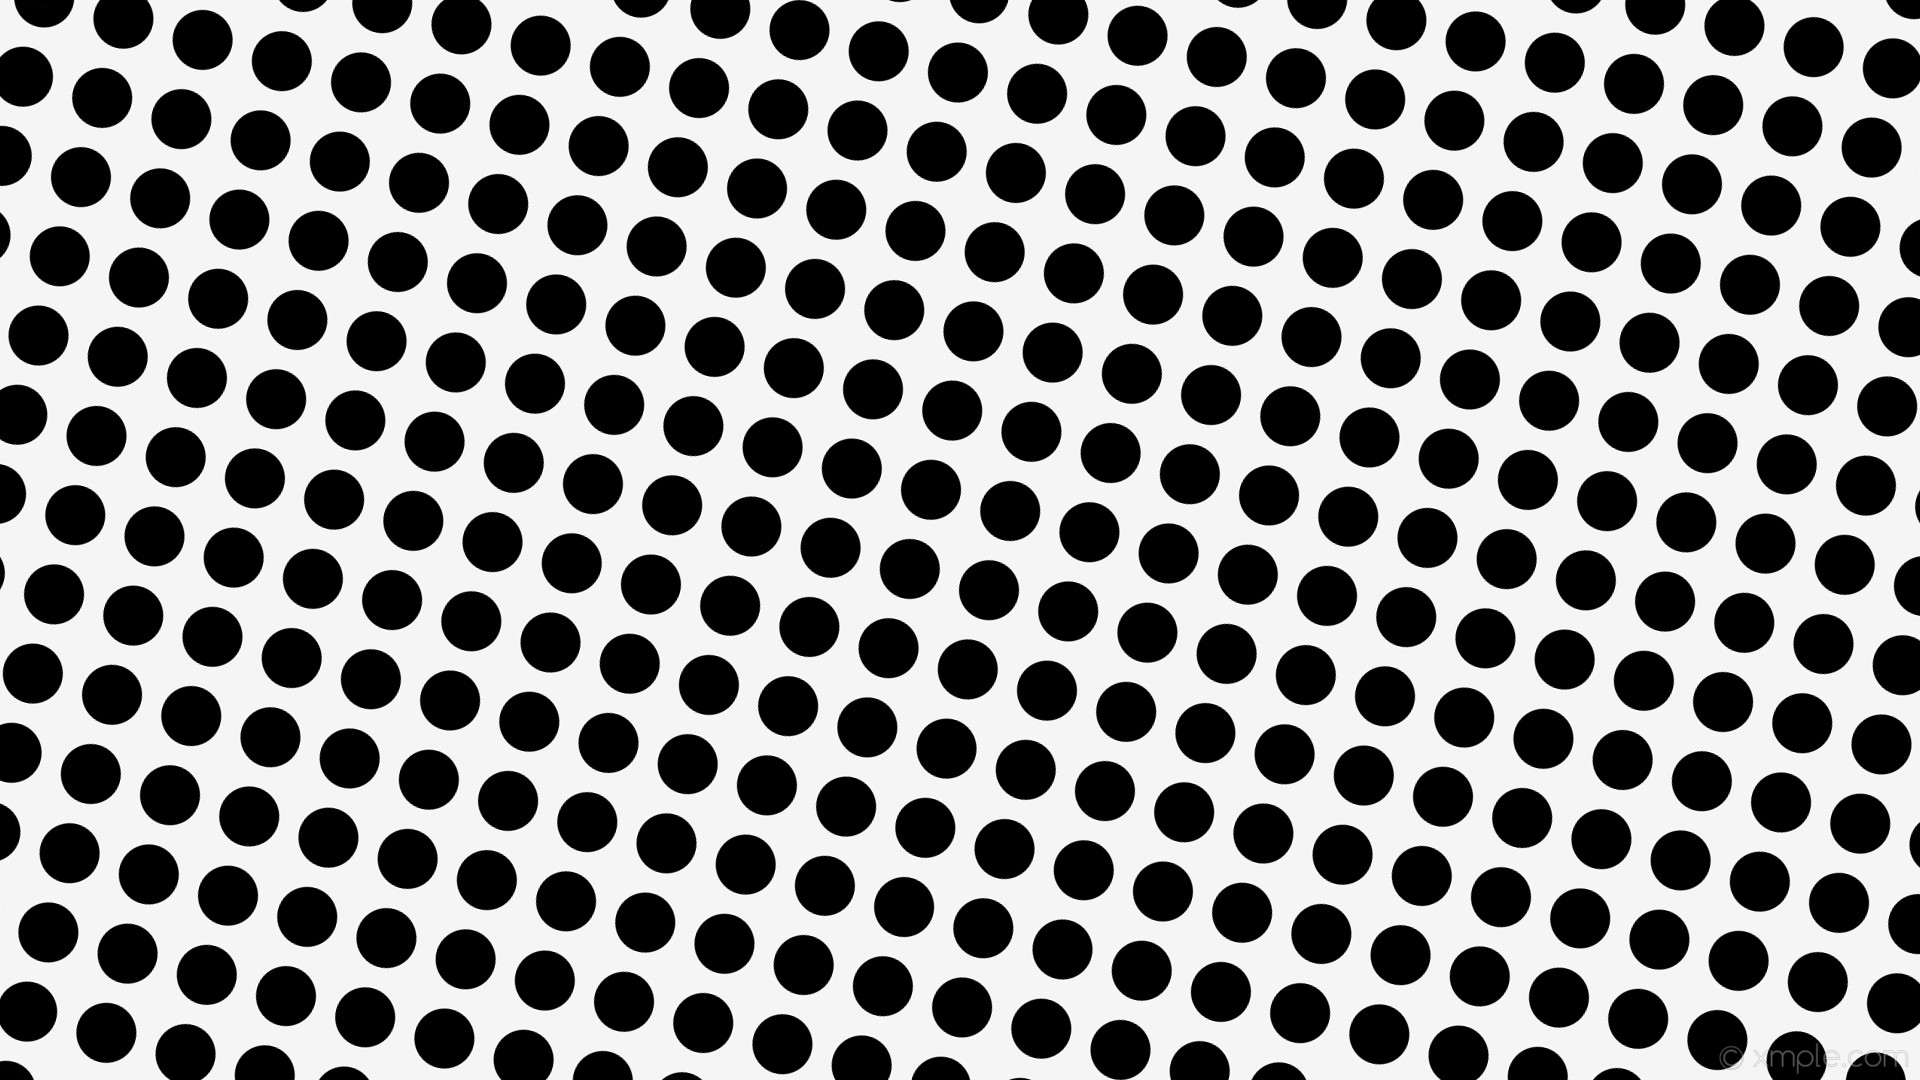 1920x1080 wallpaper polka white dots spots black white smoke #f5f5f5 #000000 255Â°  60px 82px